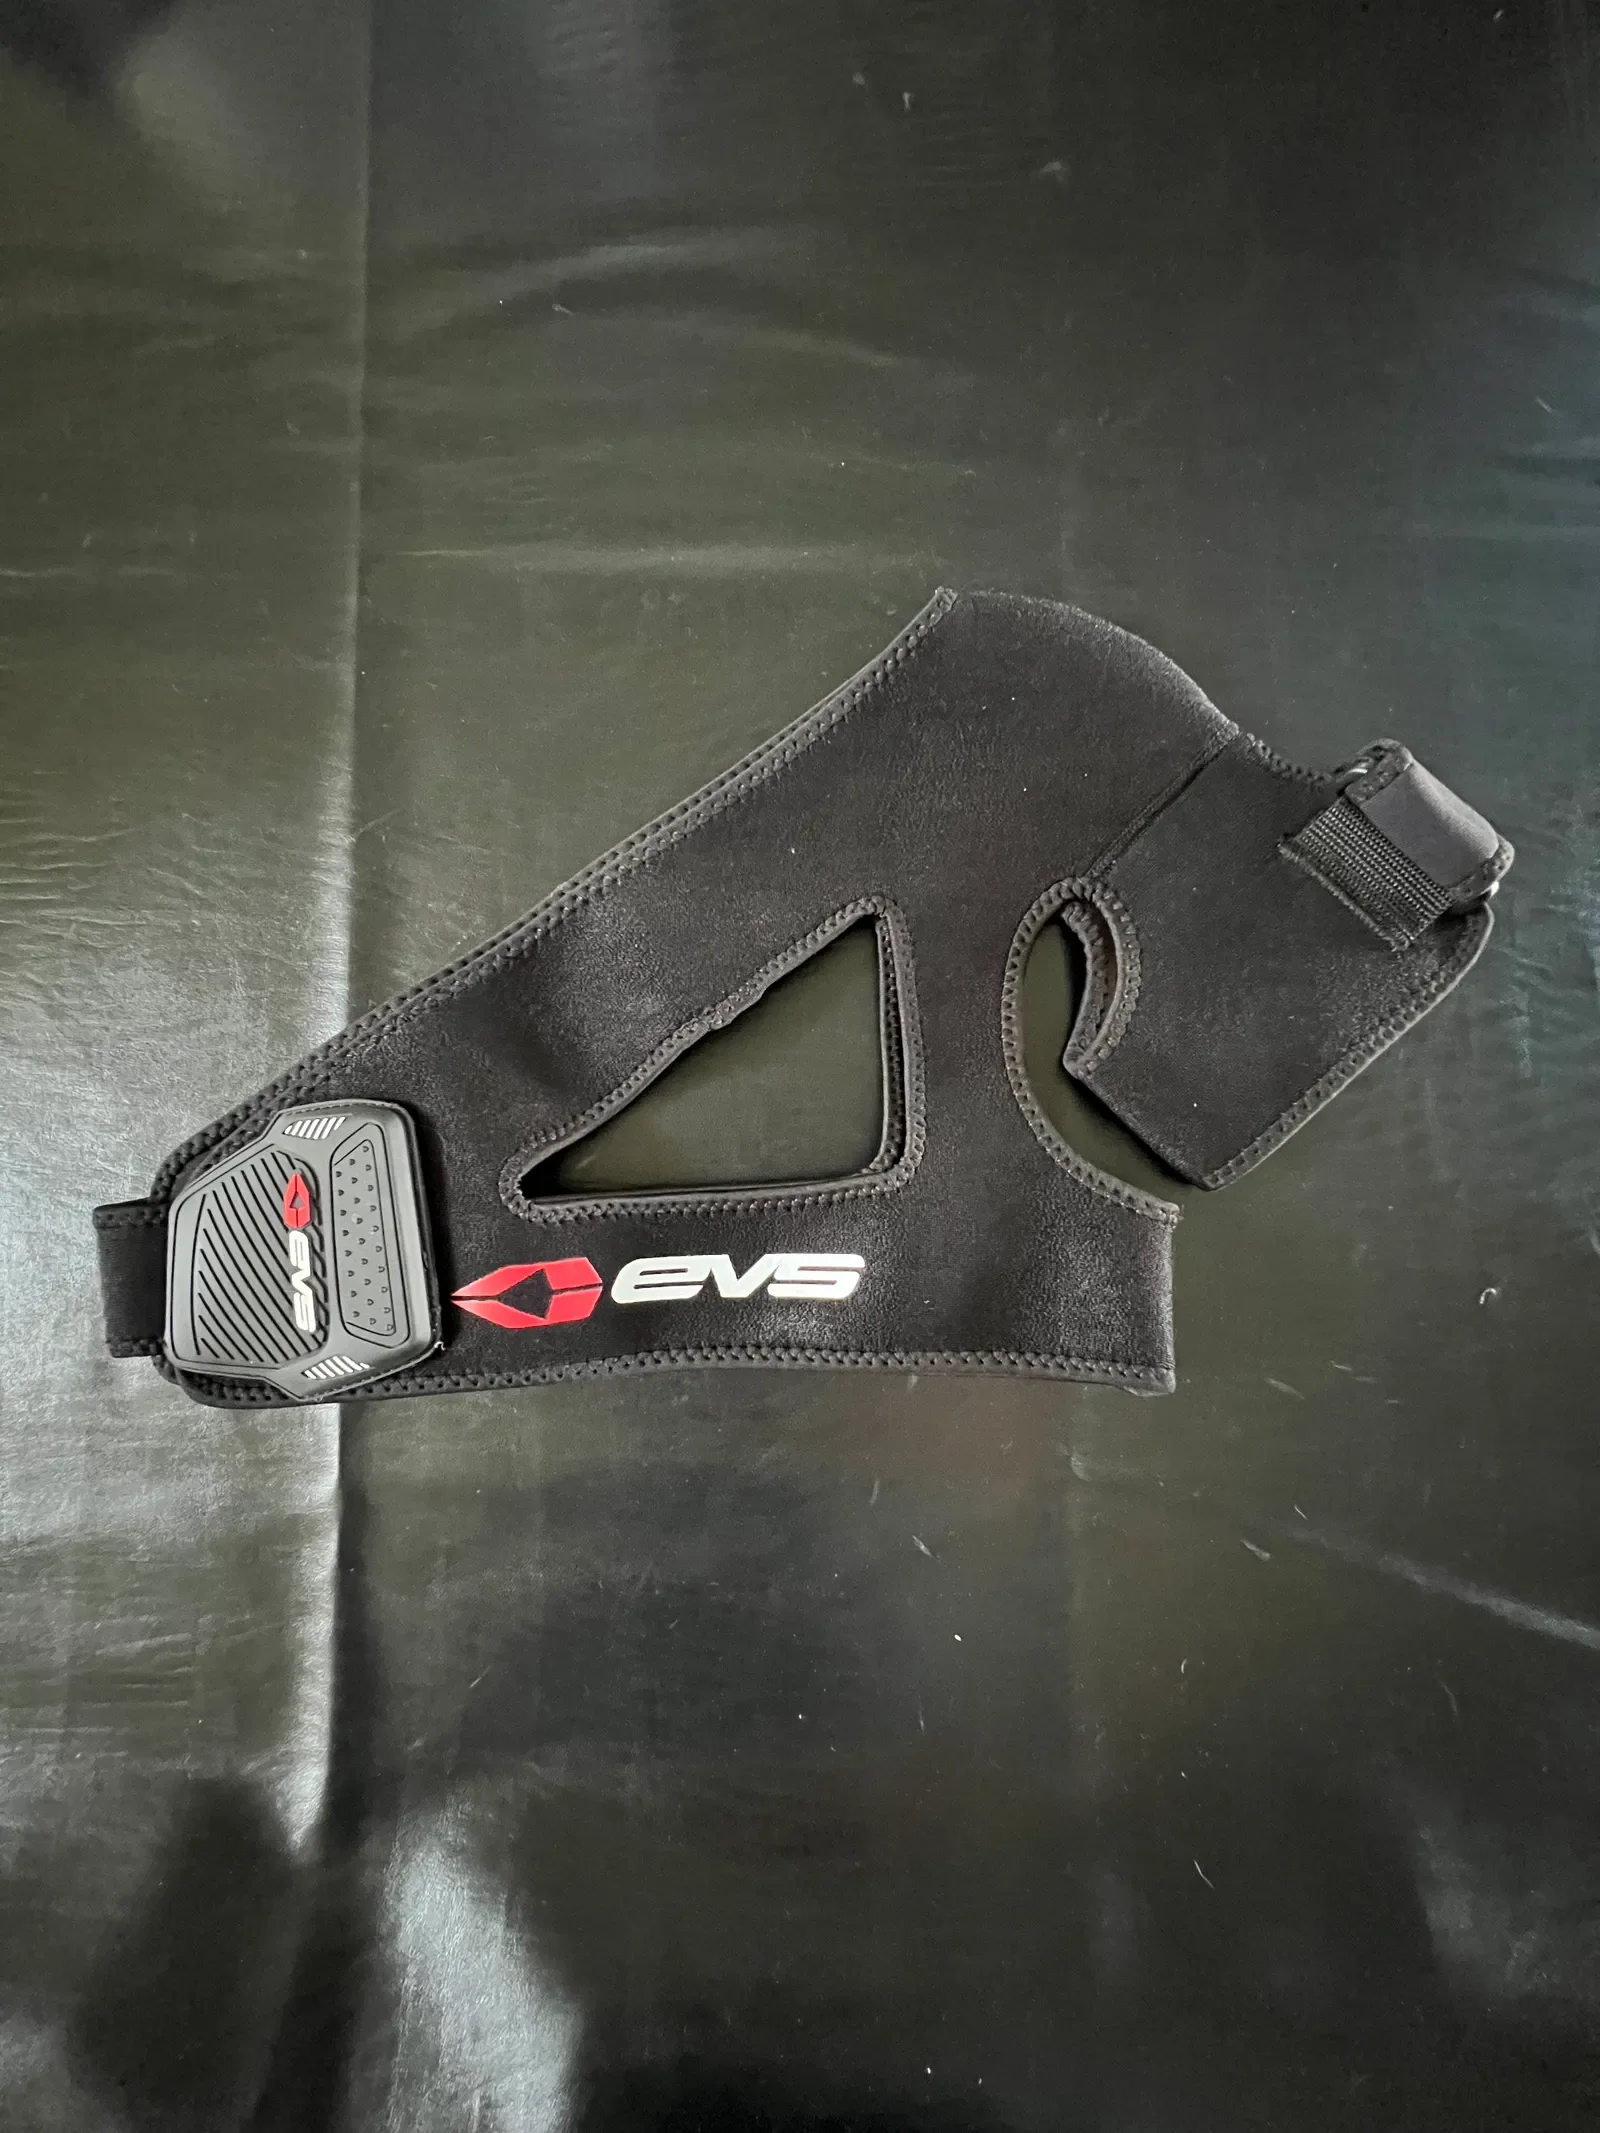 Brand New EVS Shoulder Brace